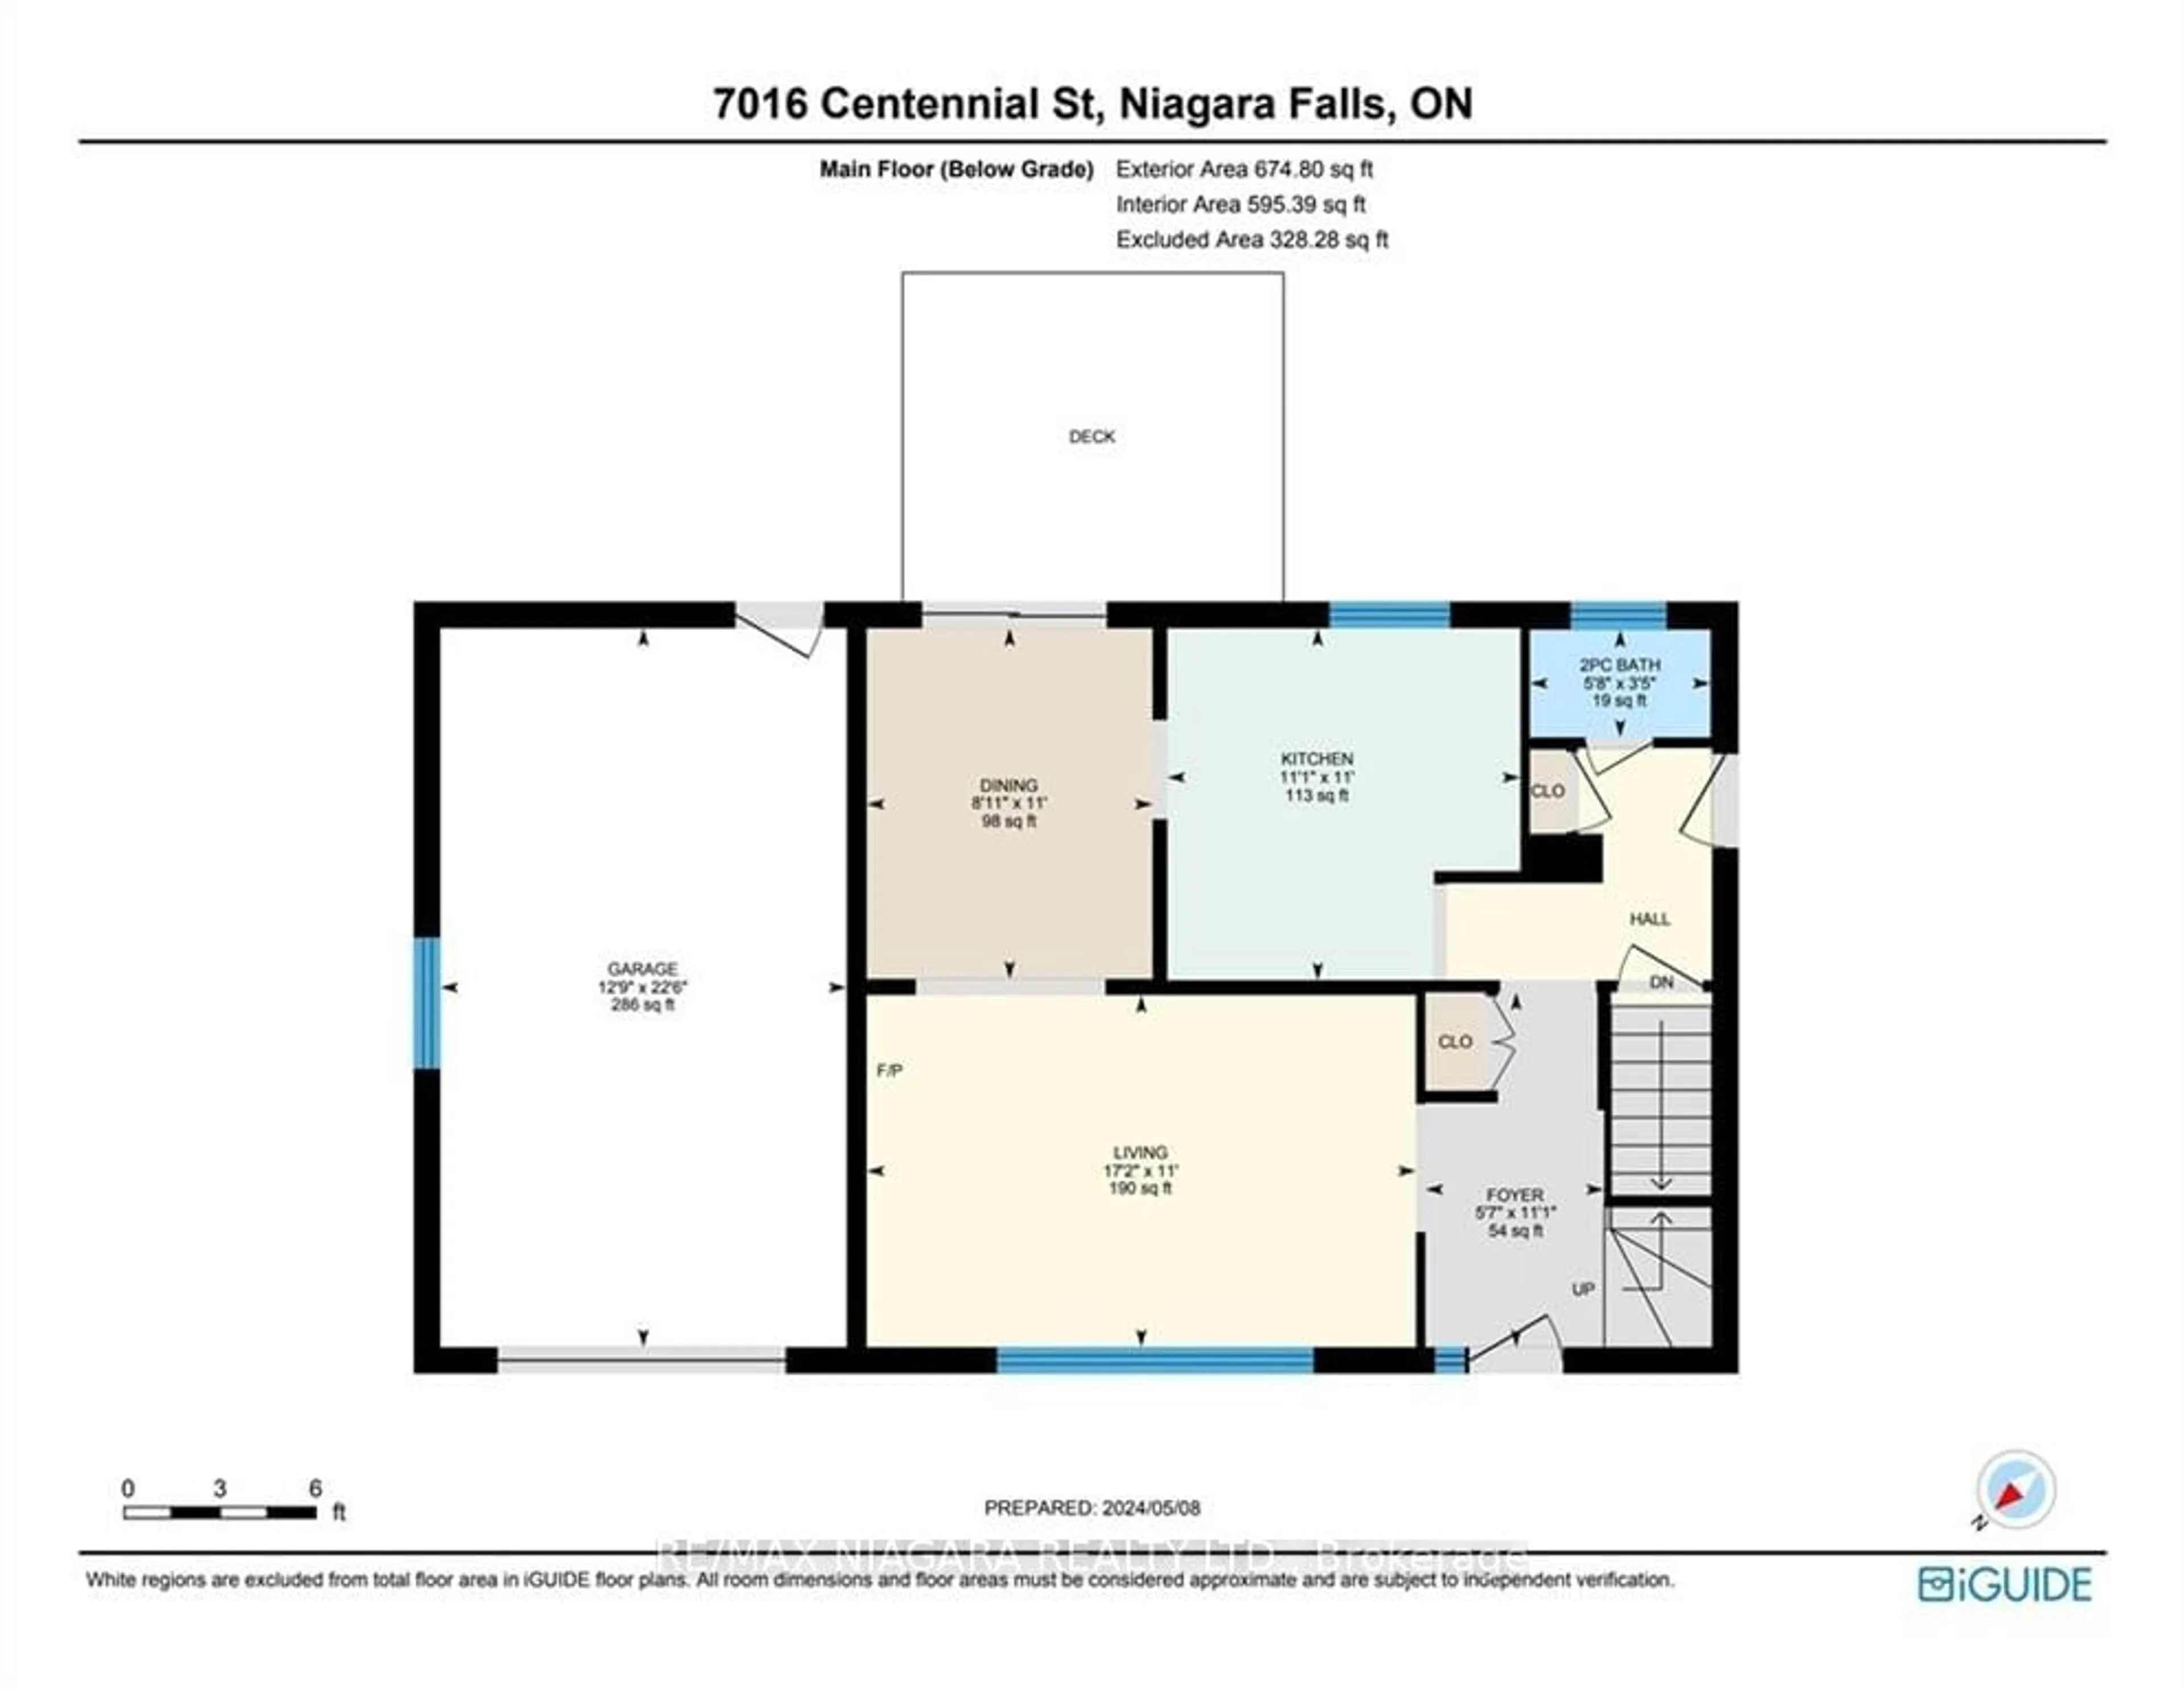 Floor plan for 7016 Centennial St, Niagara Falls Ontario L2G 2Z1